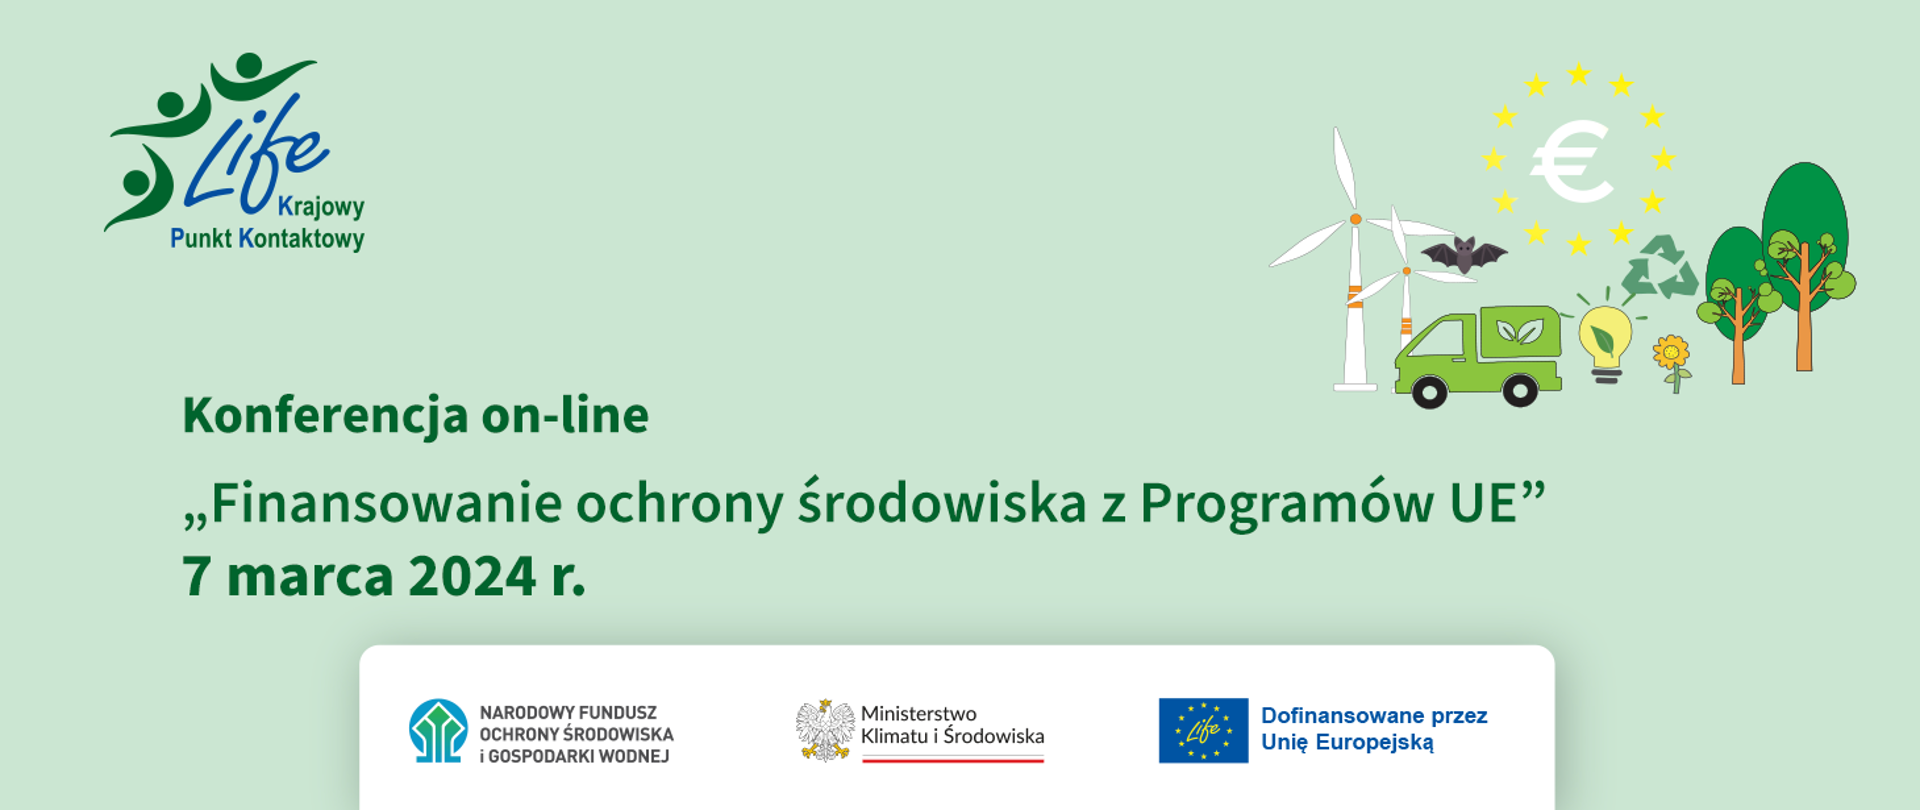 Konferencja on-lin LIFE. Finansowanie ochrony środowiska z Programów UE". 7 marca 2024 r. Plansza informacyjna.